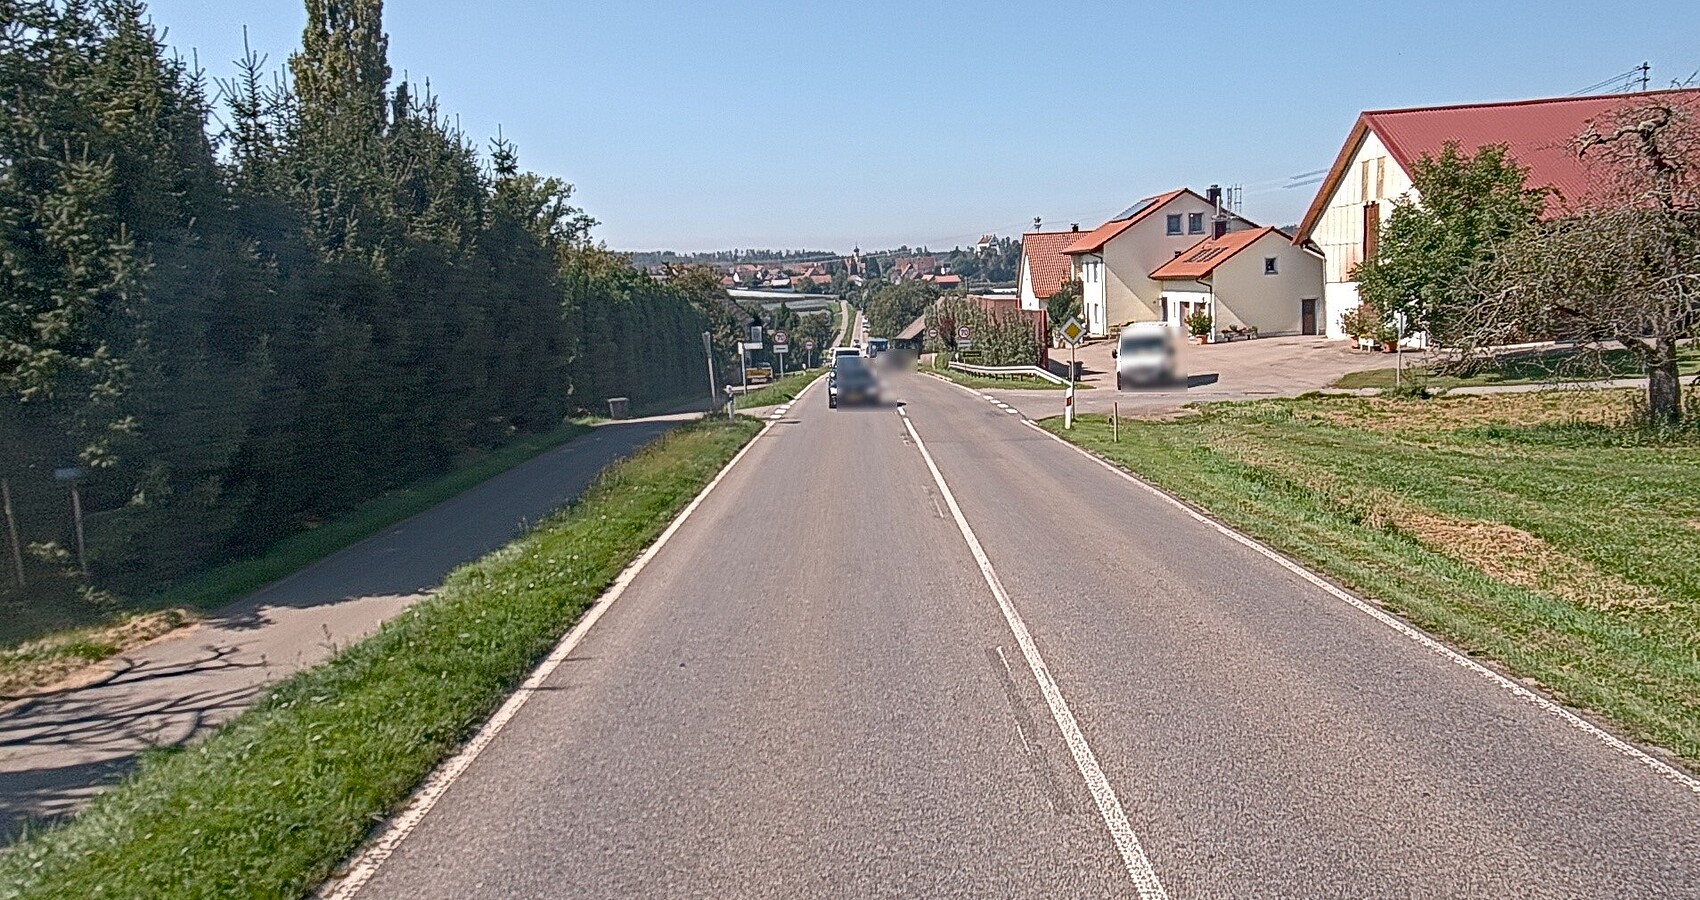 Das Foto zeigt eine Straße, die durch eine Ortschaft führt. Links sieht man Häuser